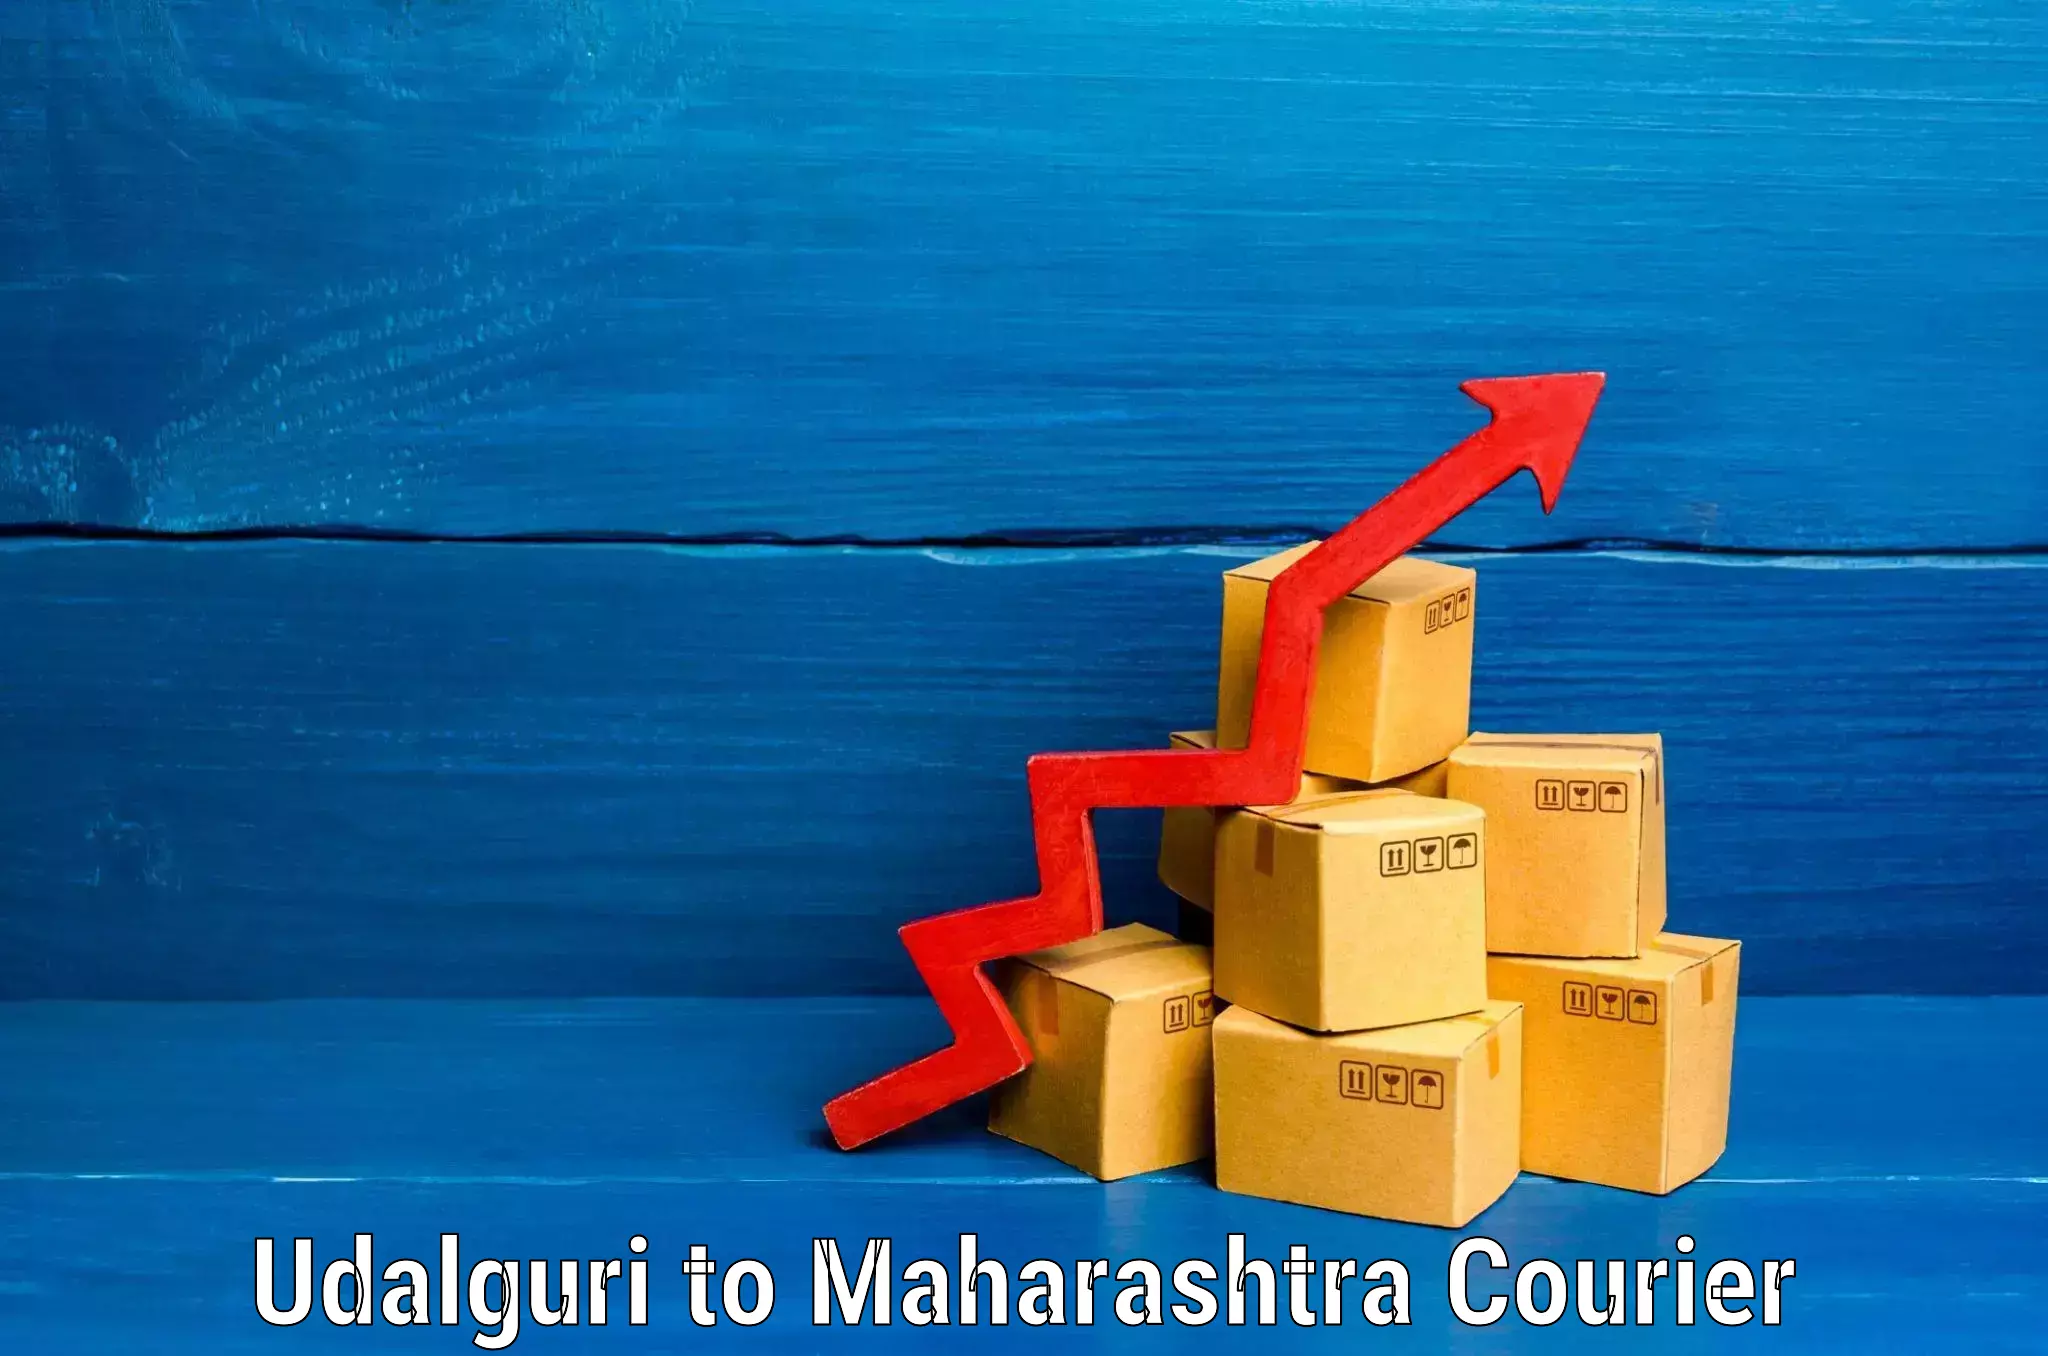 Luggage shipment tracking Udalguri to IIT Mumbai